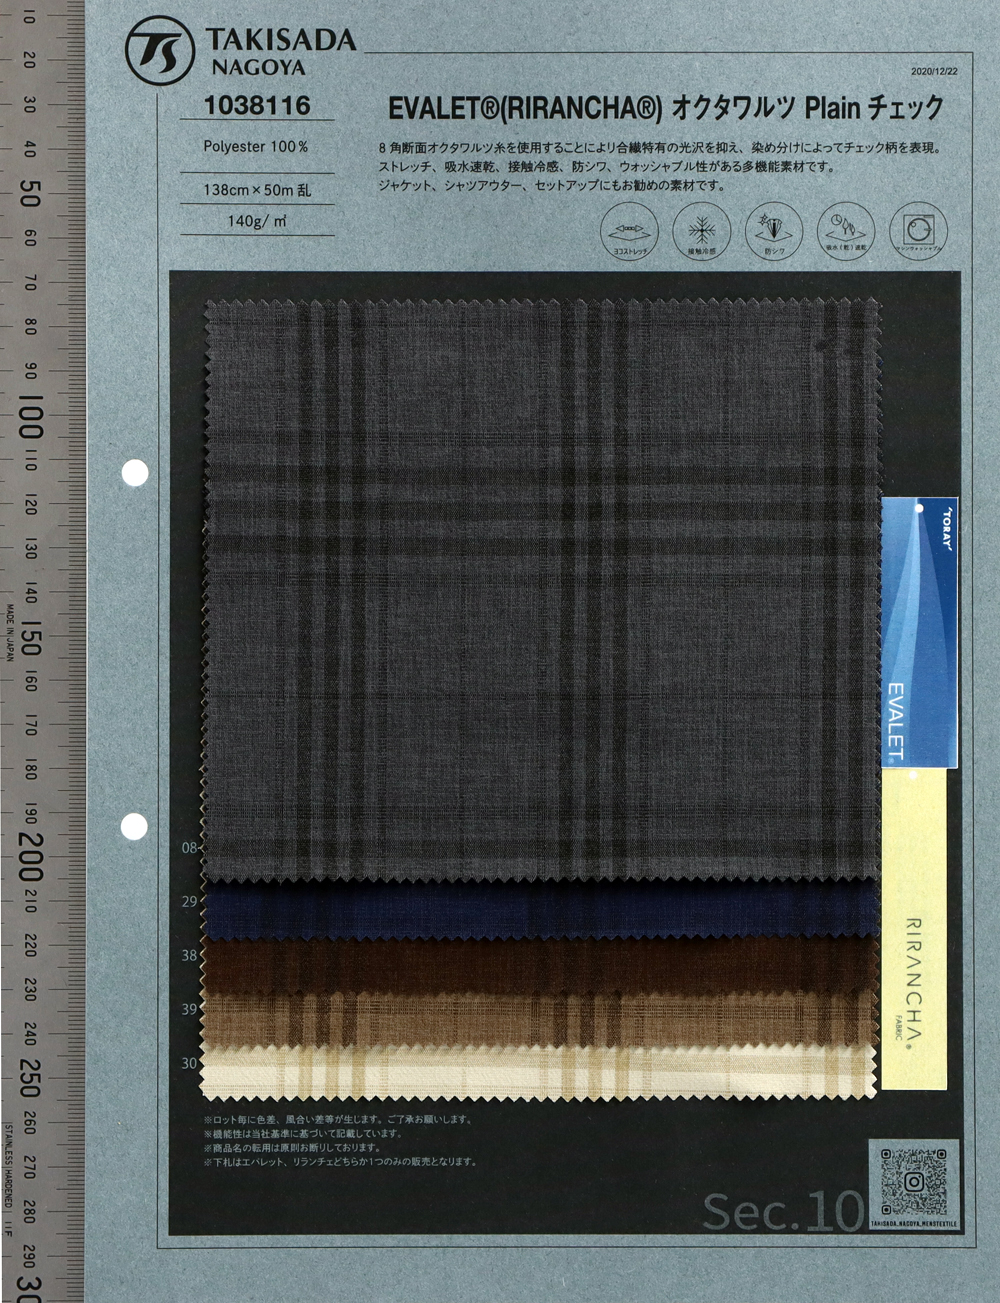 1038116 EVALET® RIRANCHE ARAN CHECK Tramo[Fabrica Textil] Takisada Nagoya